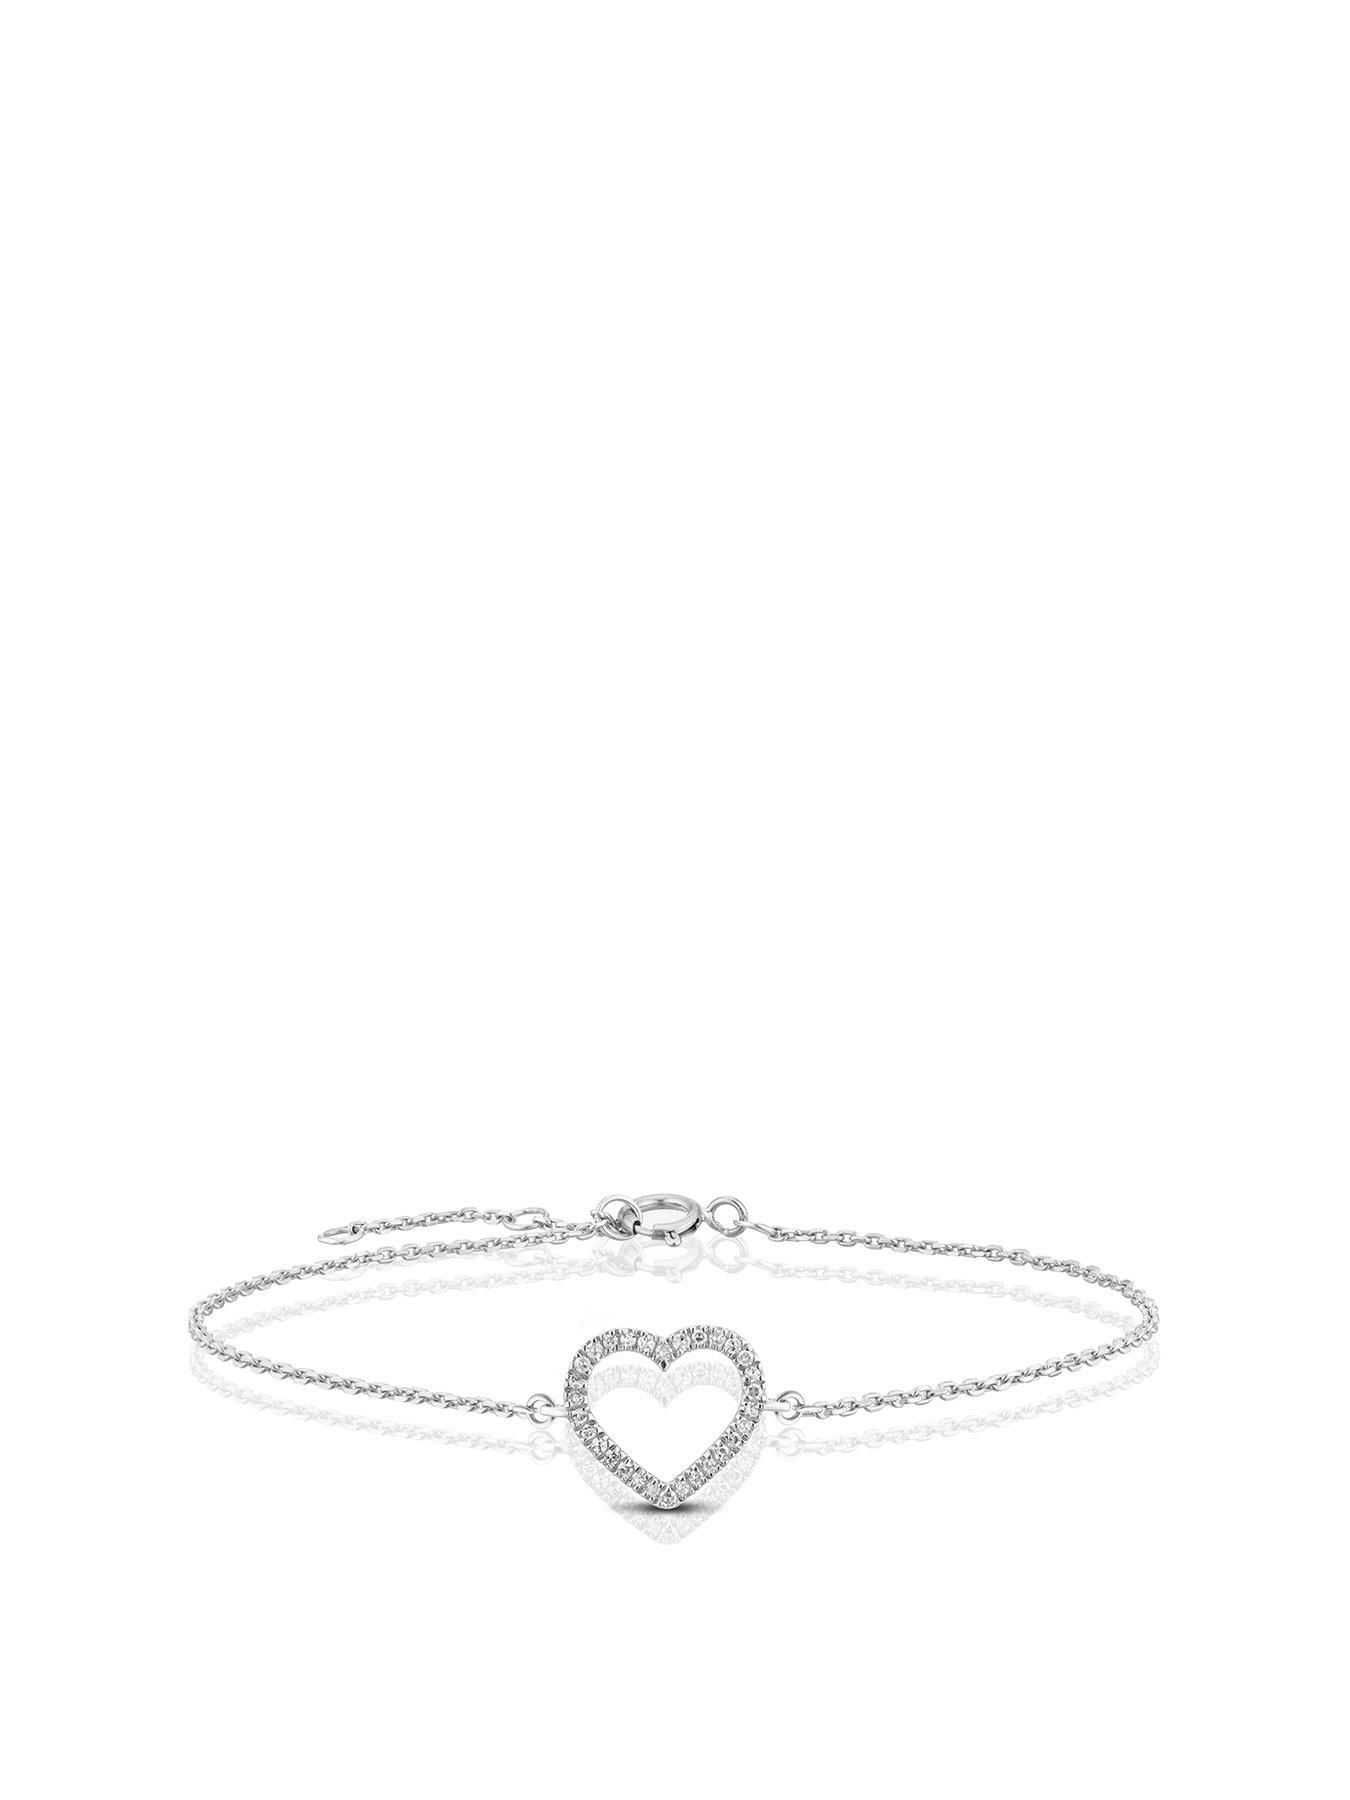 Product photograph of Ernest Jones 9ct White Gold Diamond Pav Heart Bracelet from very.co.uk